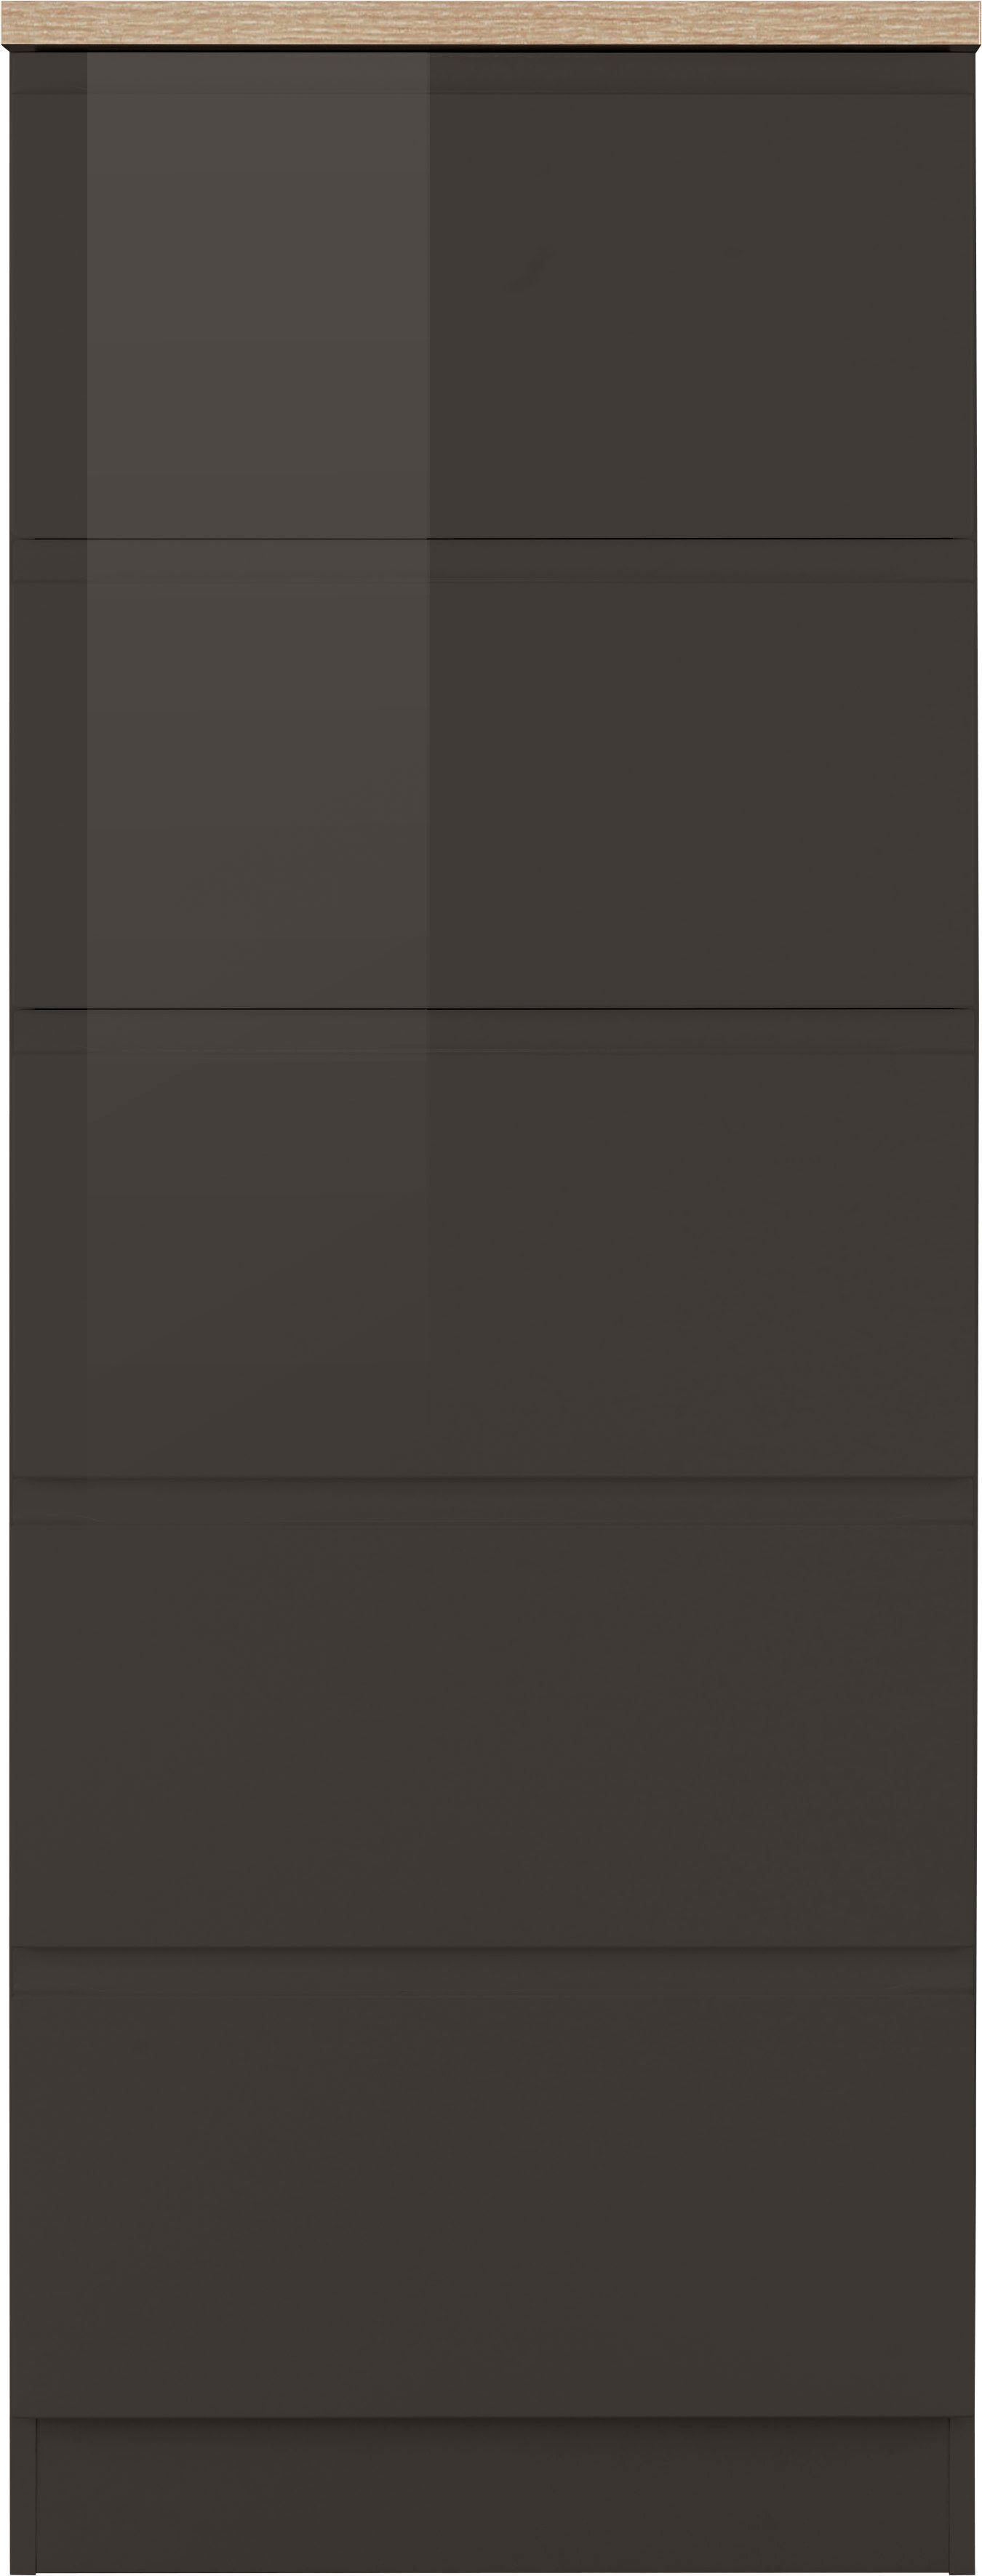 HELD MÖBEL Vorratsschrank Virginia sonoma mit cm breit, grau 60 Hochglanz/grau | 5 eiche Auszügen